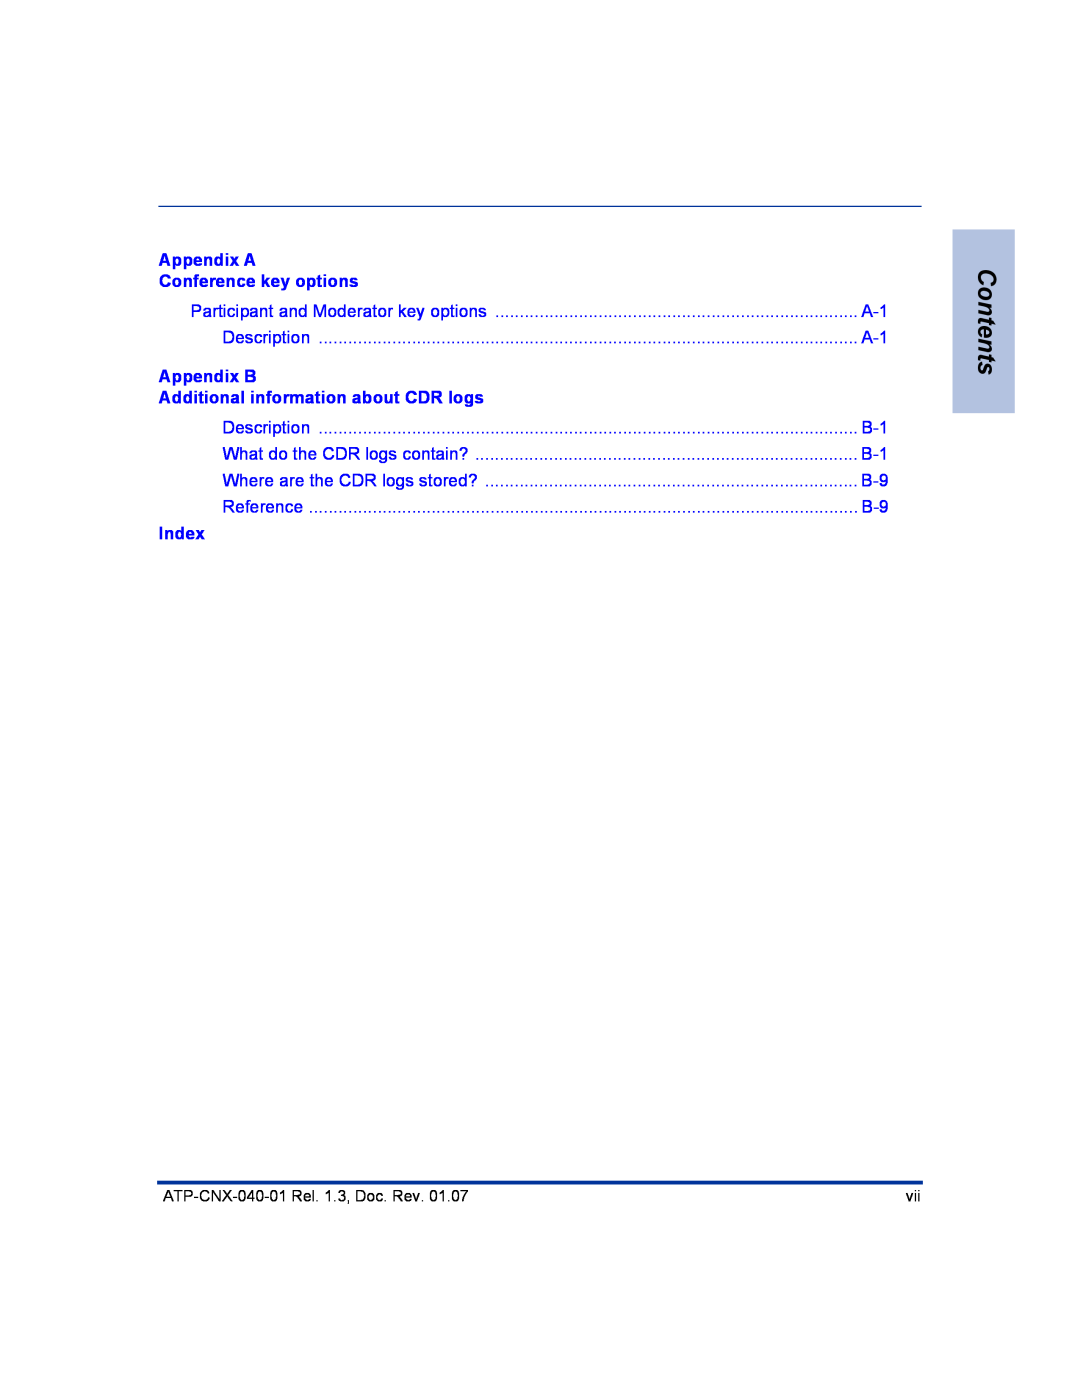 Aastra Telecom ATP-CNX-040-01 manual Contents, Appendix A Conference key options, Appendix B, Index 